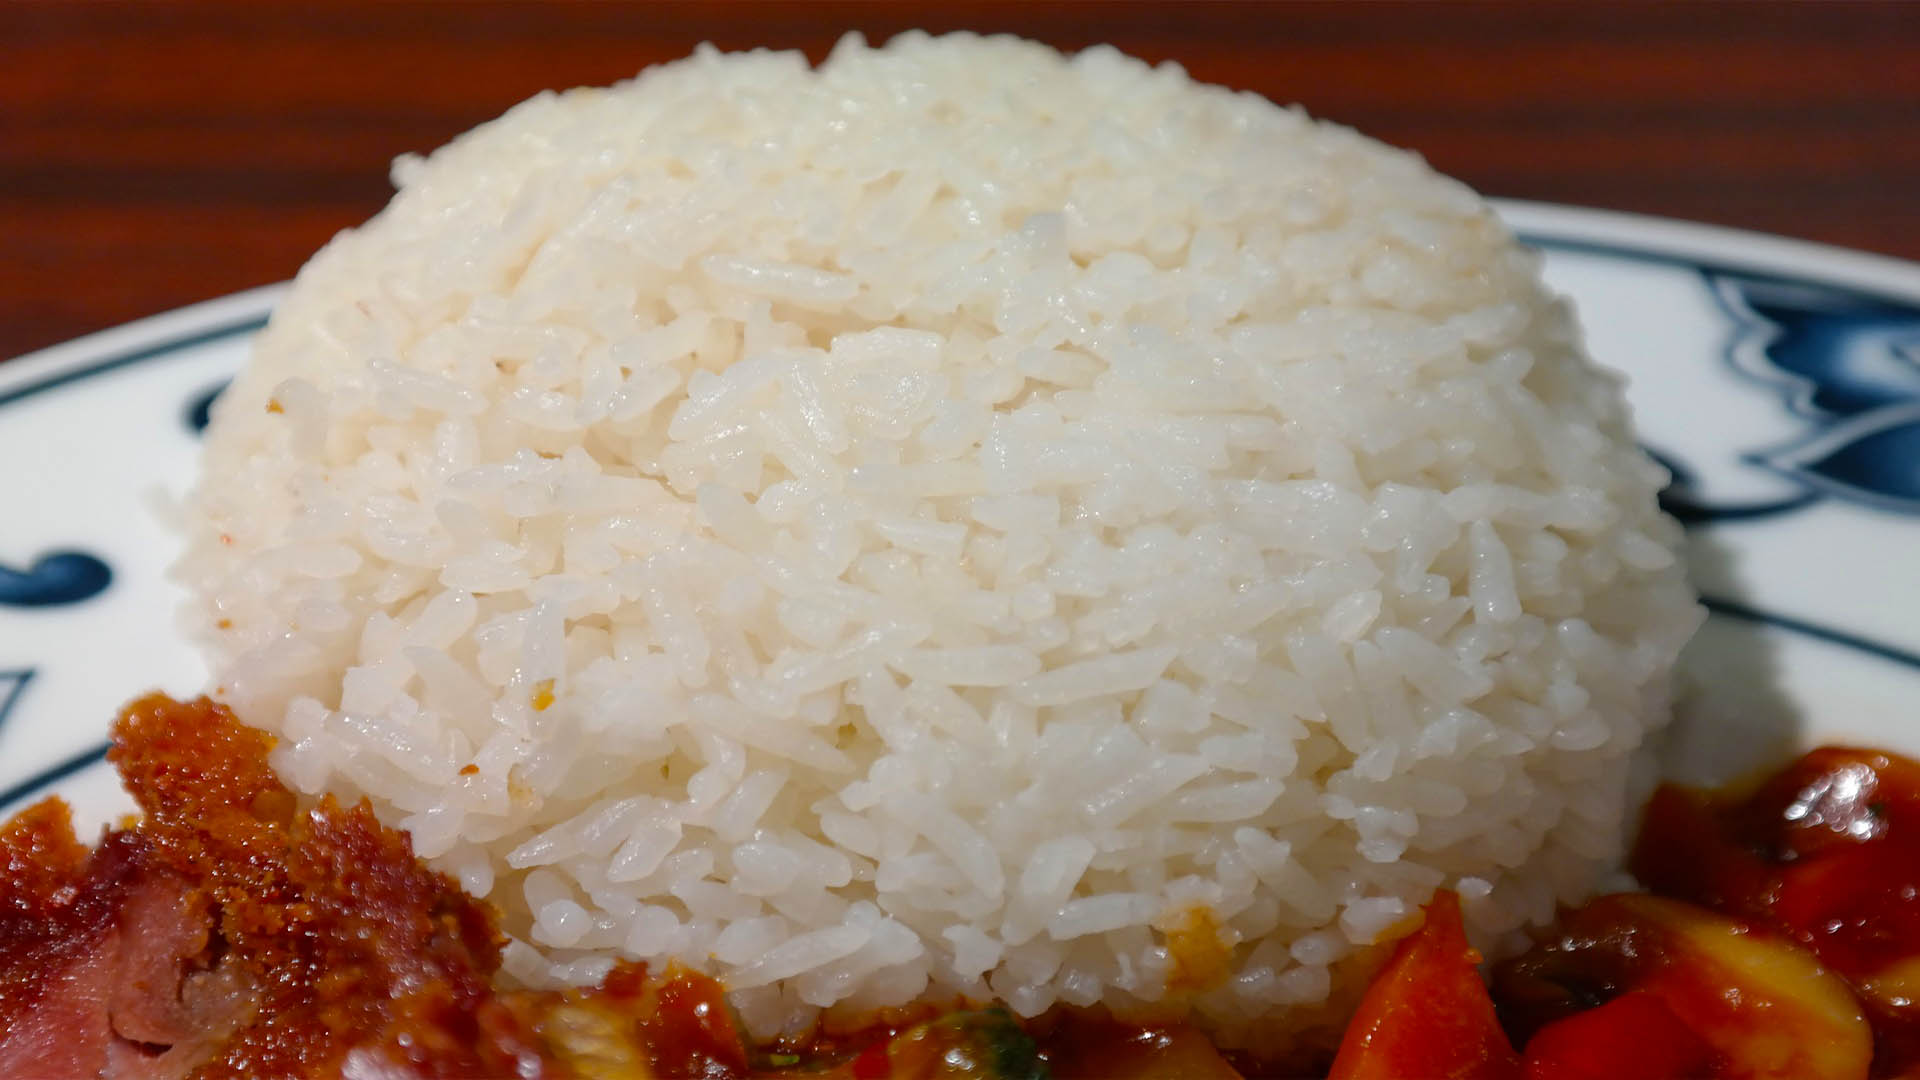 Meddig áll el a főtt rizs hűtőben? Meddig jó a főtt rizs? című cikk borítóképe